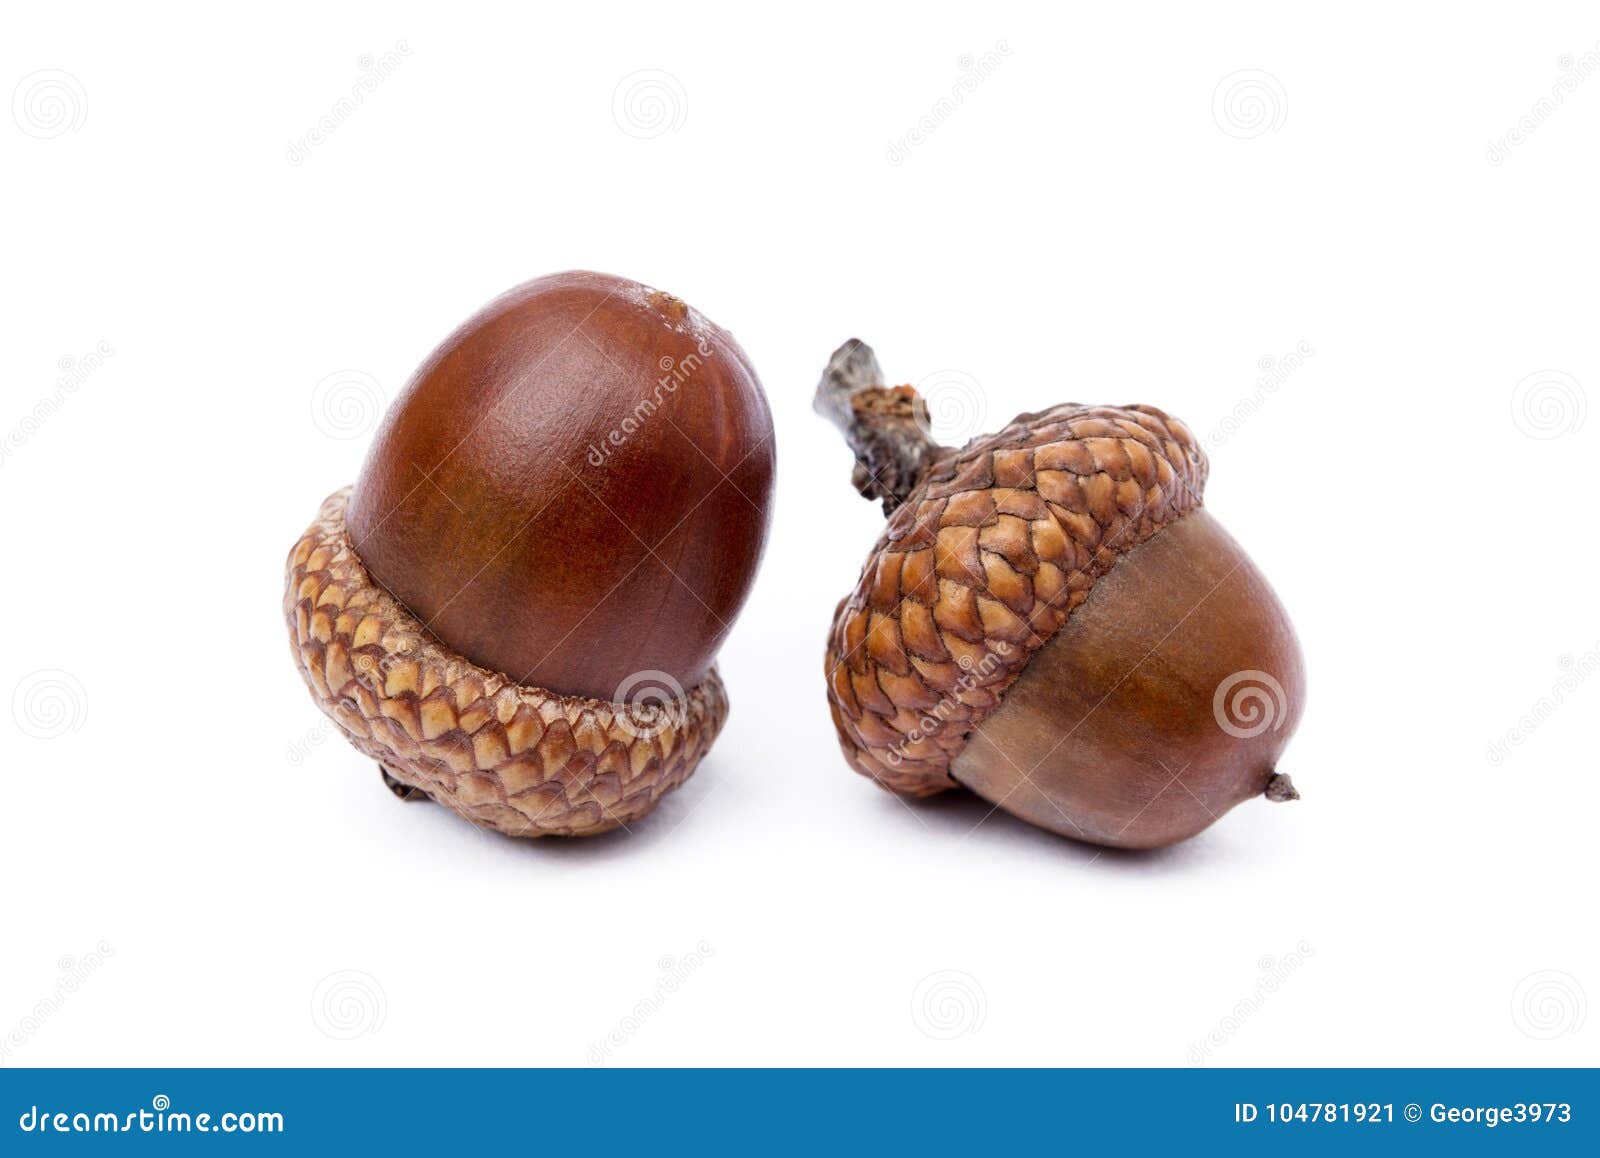 ripe acorns